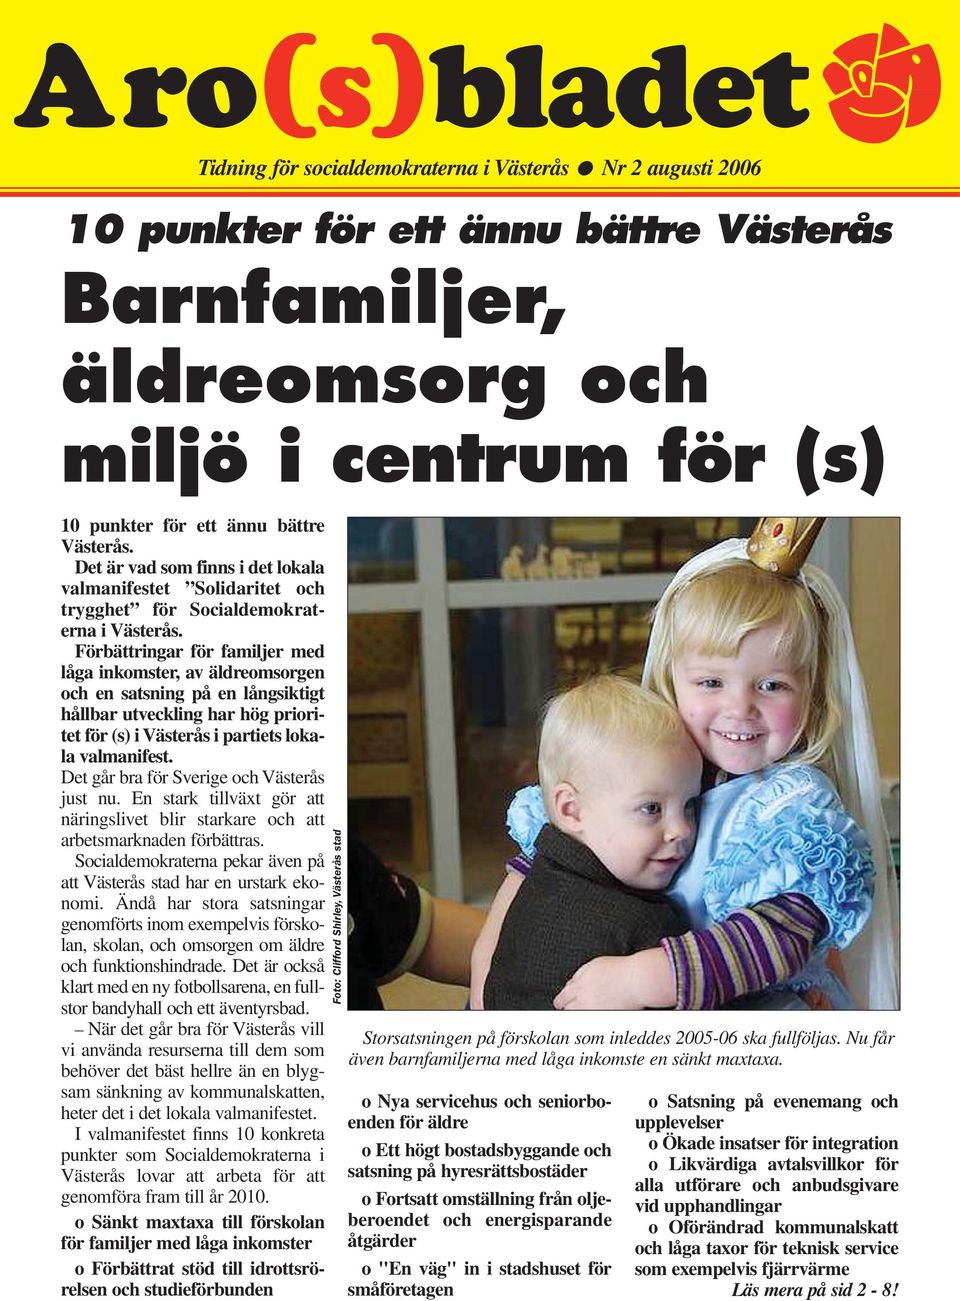 Förbättringar för familjer med låga inkomster, av äldreomsorgen och en satsning på en långsiktigt hållbar utveckling har hög prioritet för (s) i Västerås i partiets lokala valmanifest.